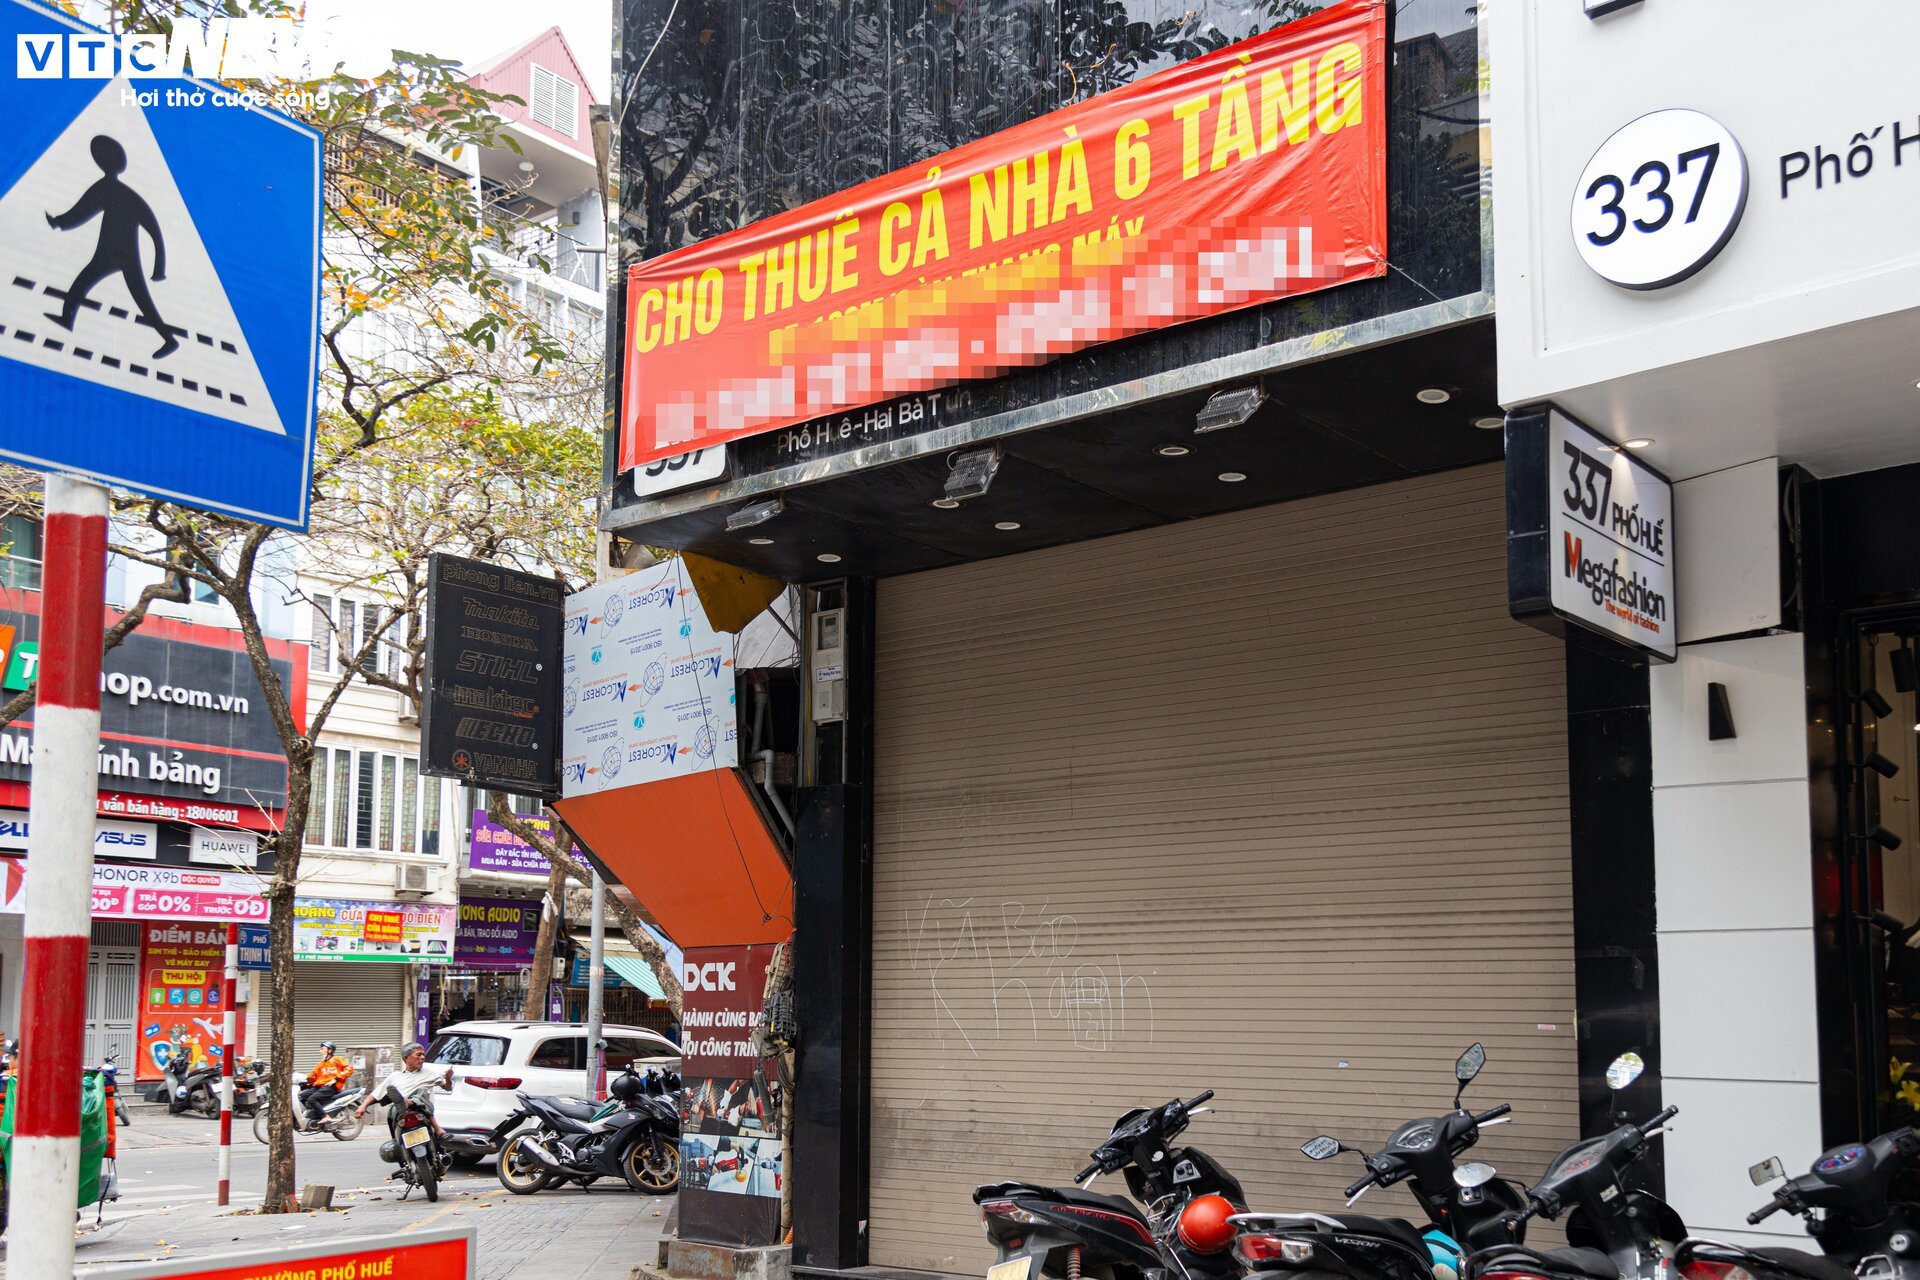 Hàng chục cửa hàng trên đất vàng phố Huế, Hà Nội đóng cửa, treo biển cho thuê - Ảnh 2.